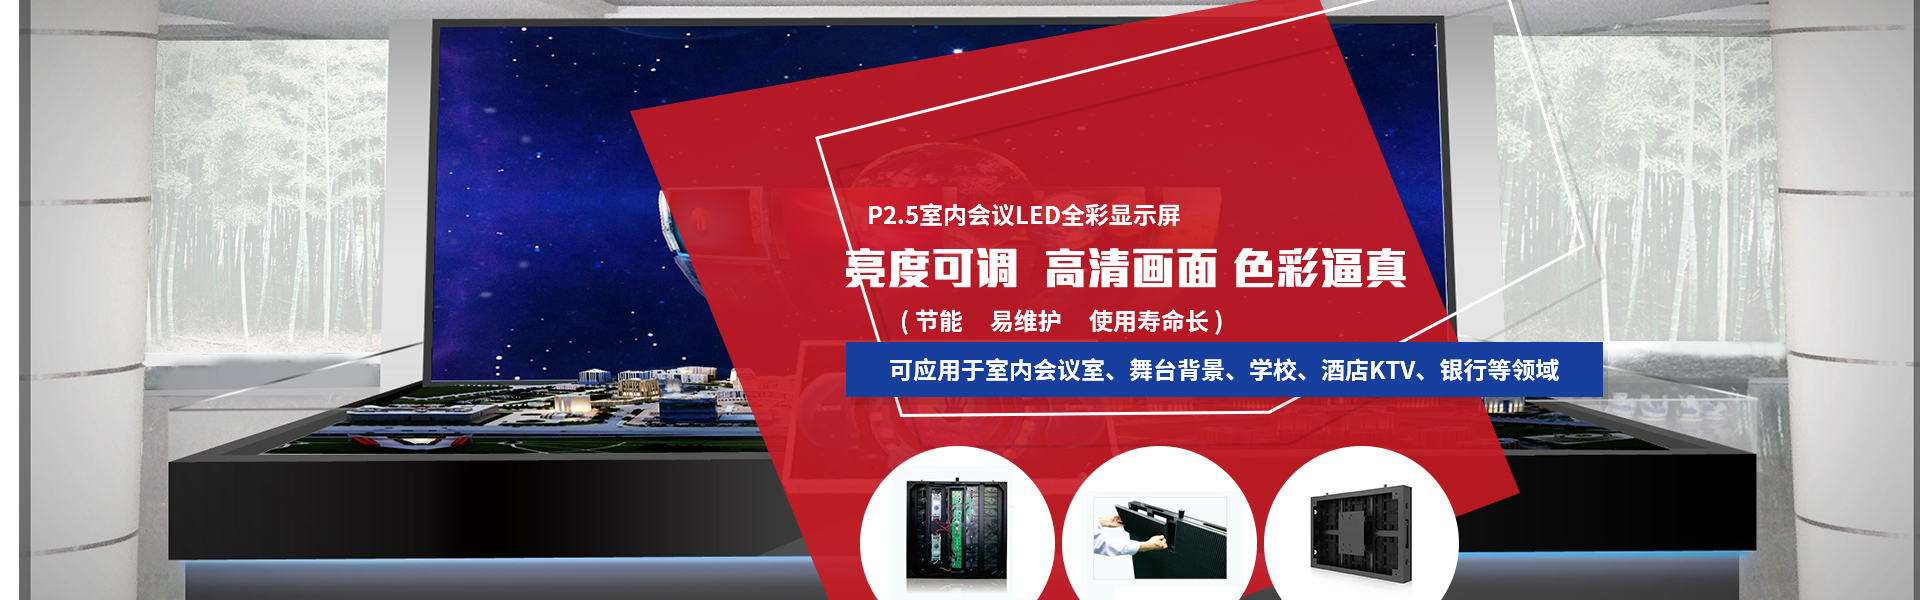 p2.5室内led全彩显示屏厂家选择广州展视光电,高清画面